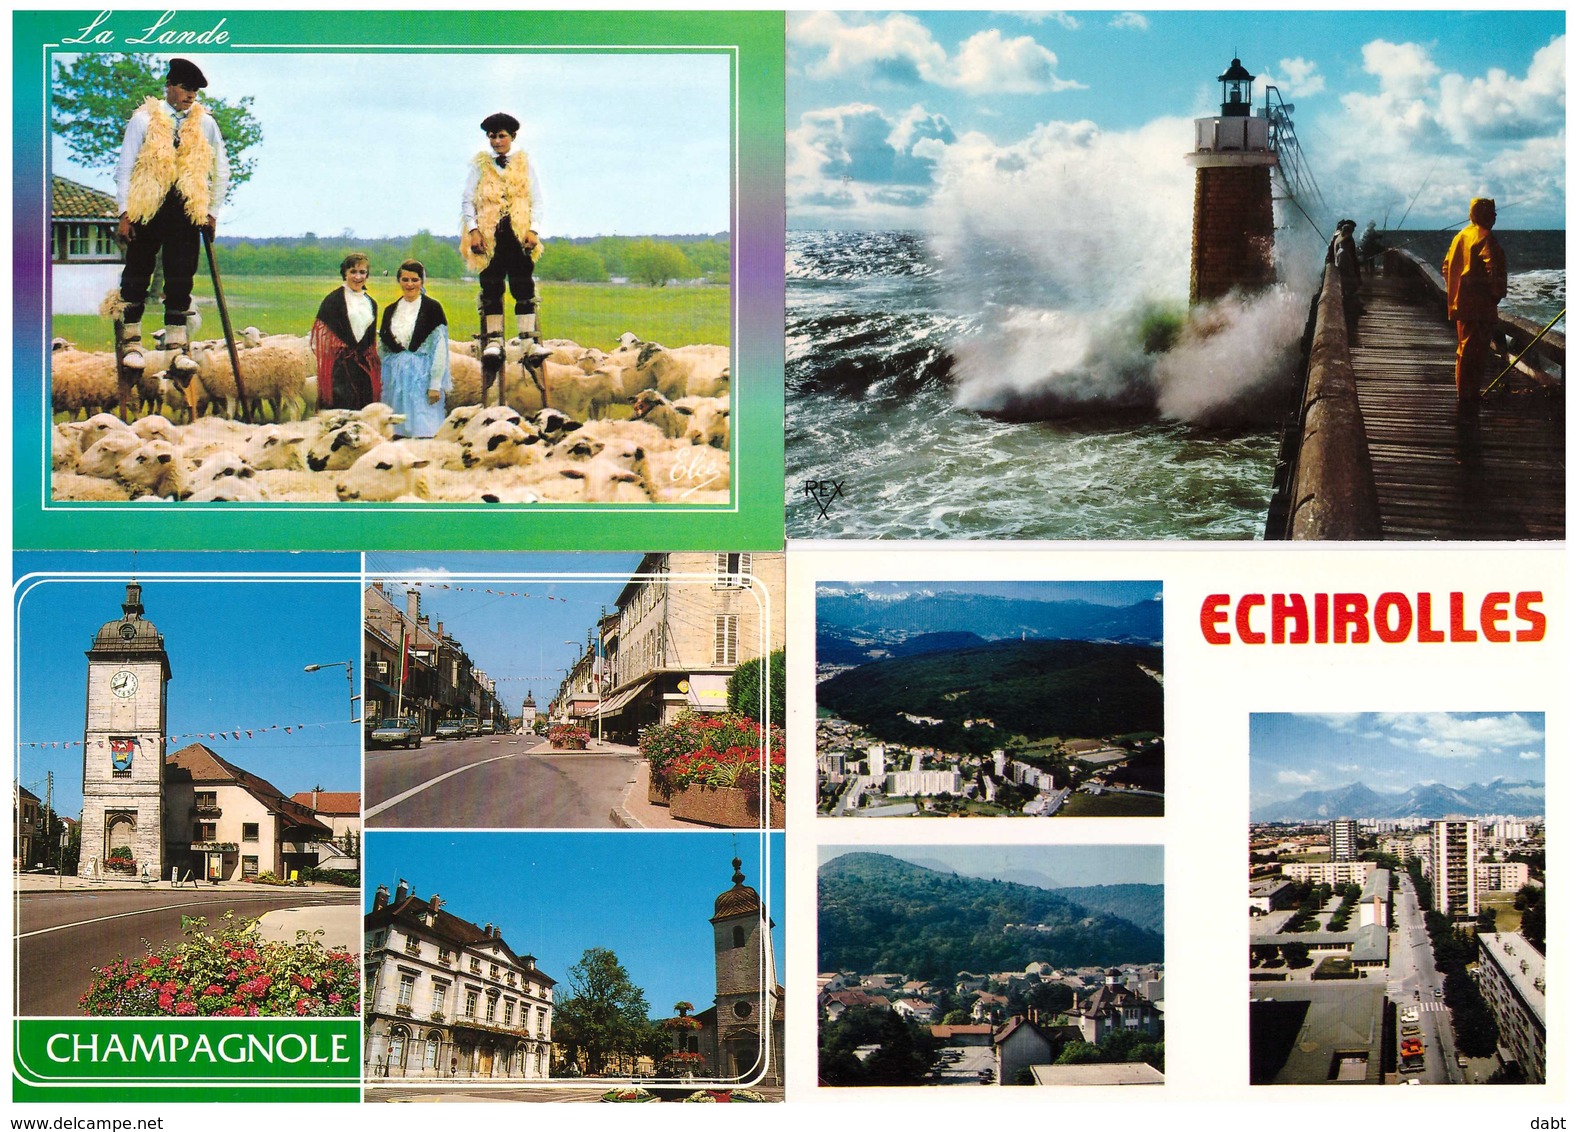 LOT 1020 CARTES POSTALES  principalement France , cartes scannées incluses